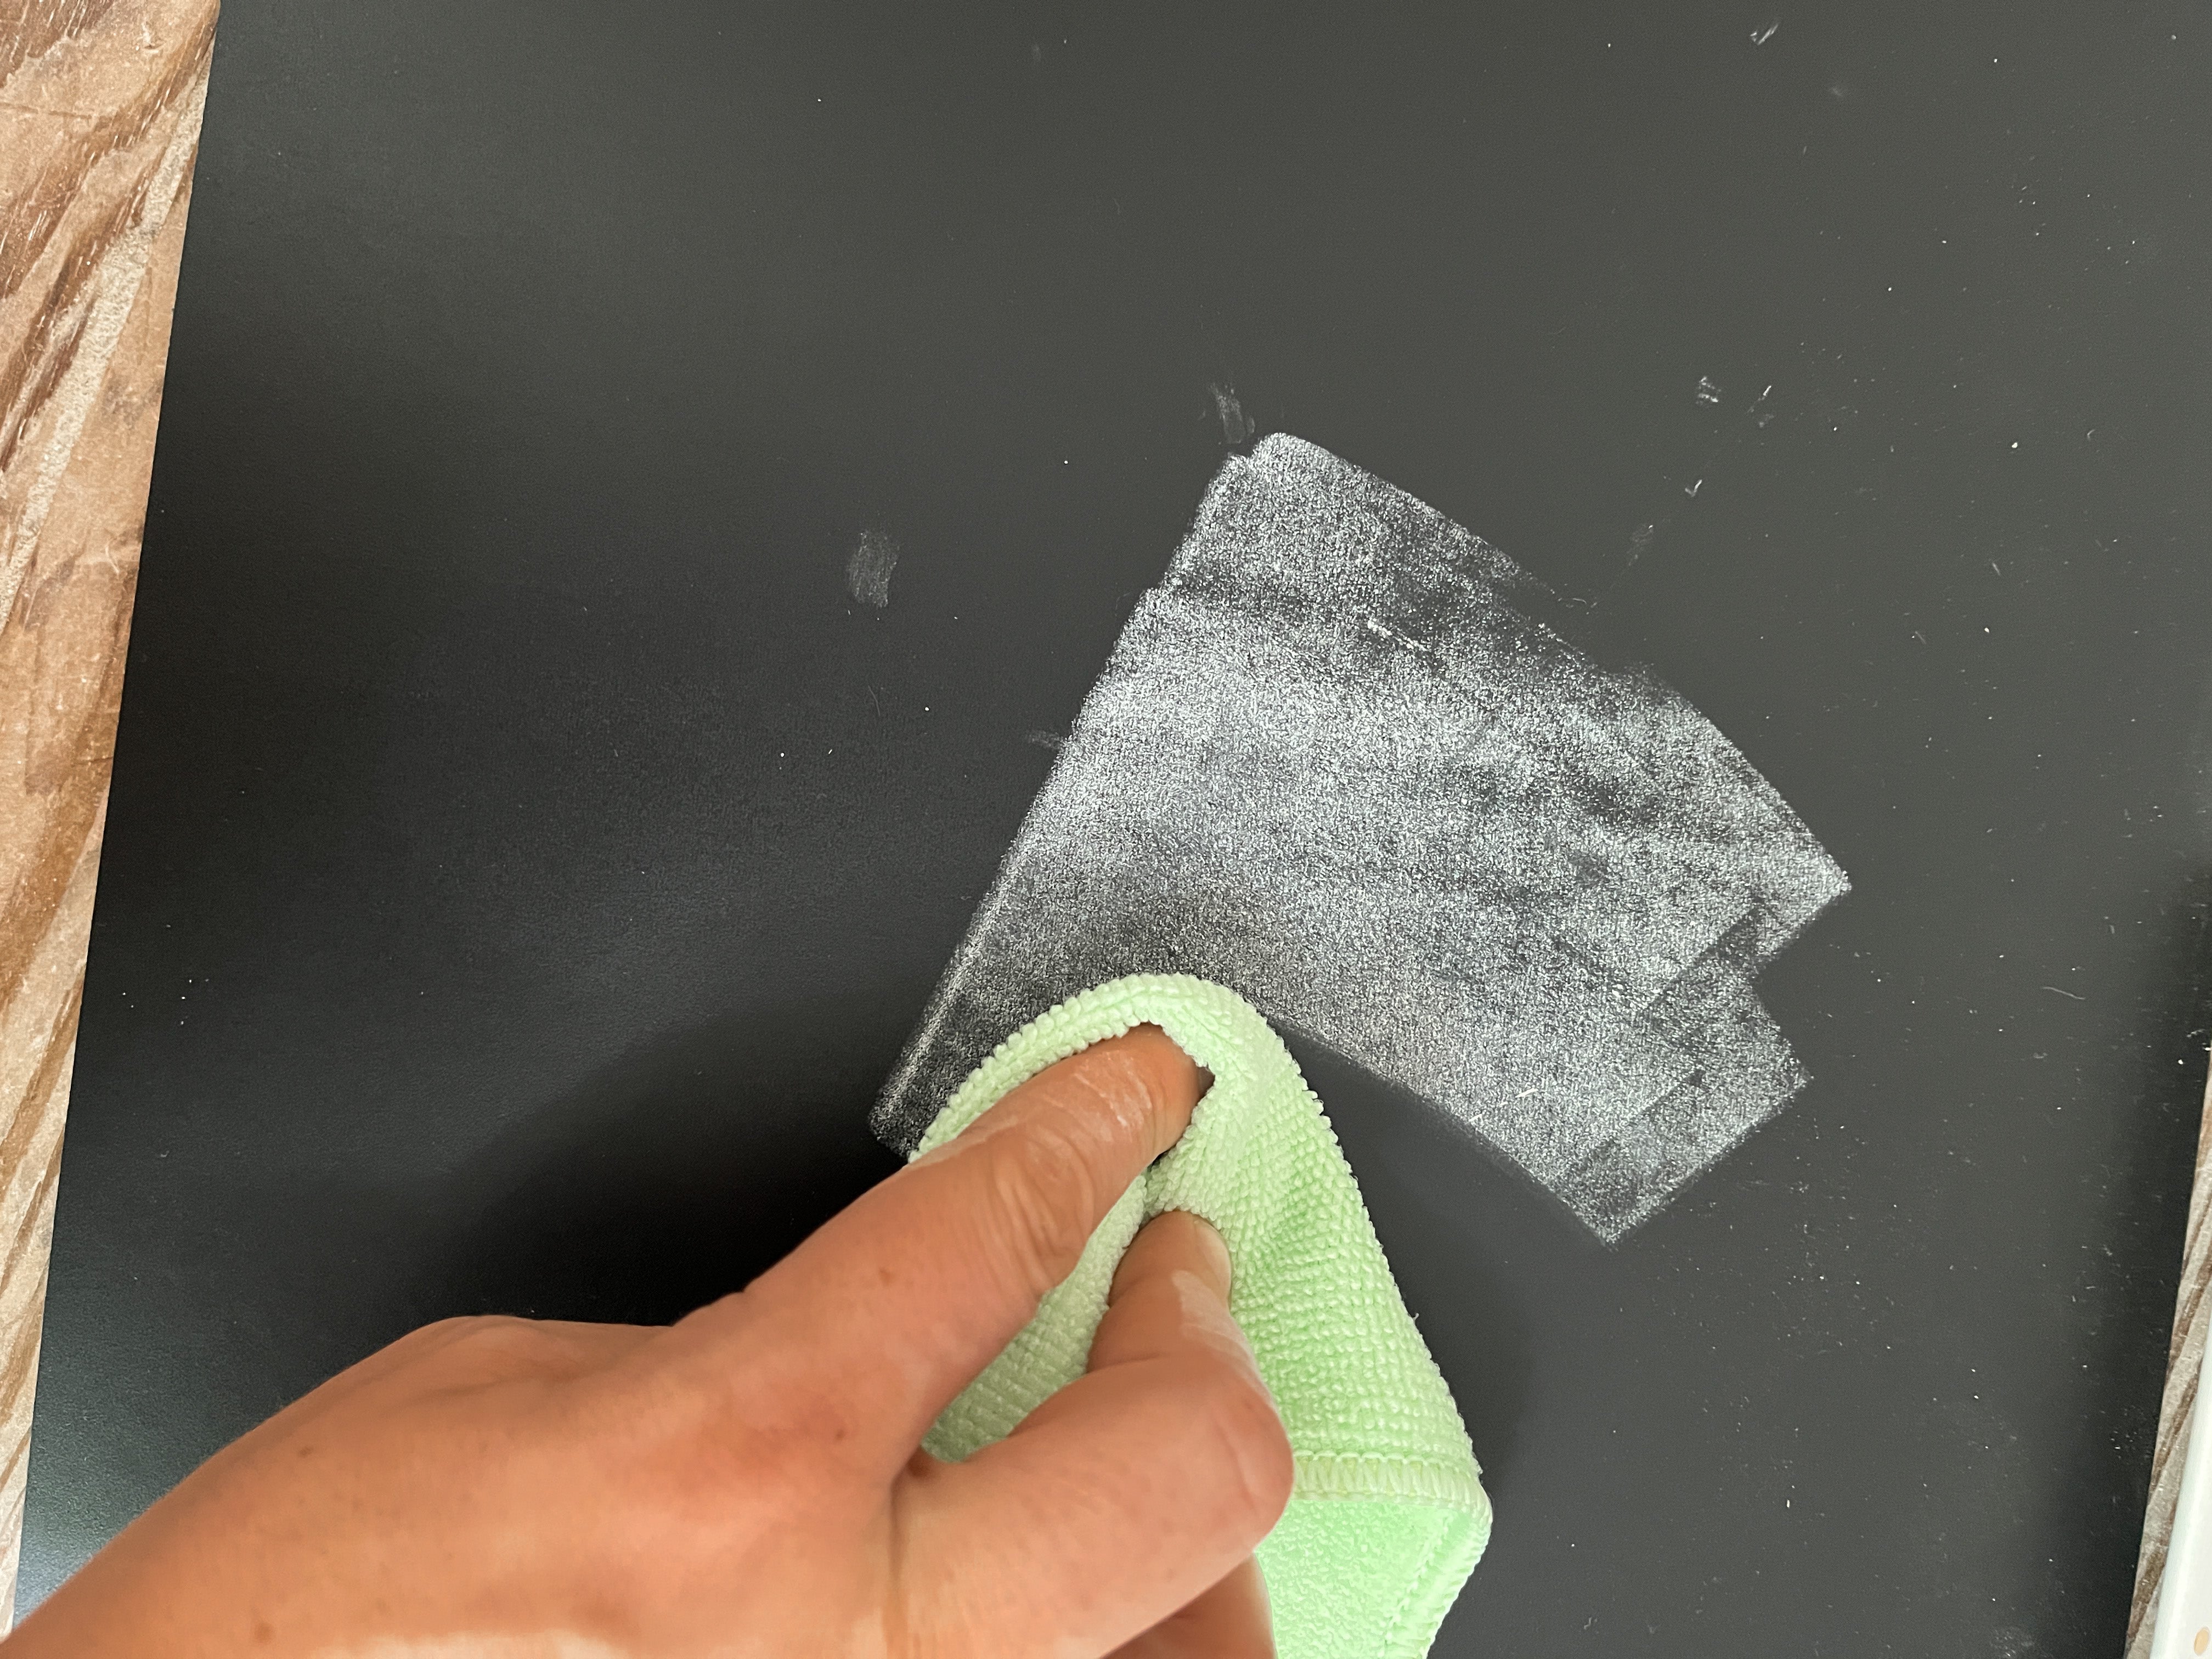 Microfiber Erasing Cloth (2 pack)